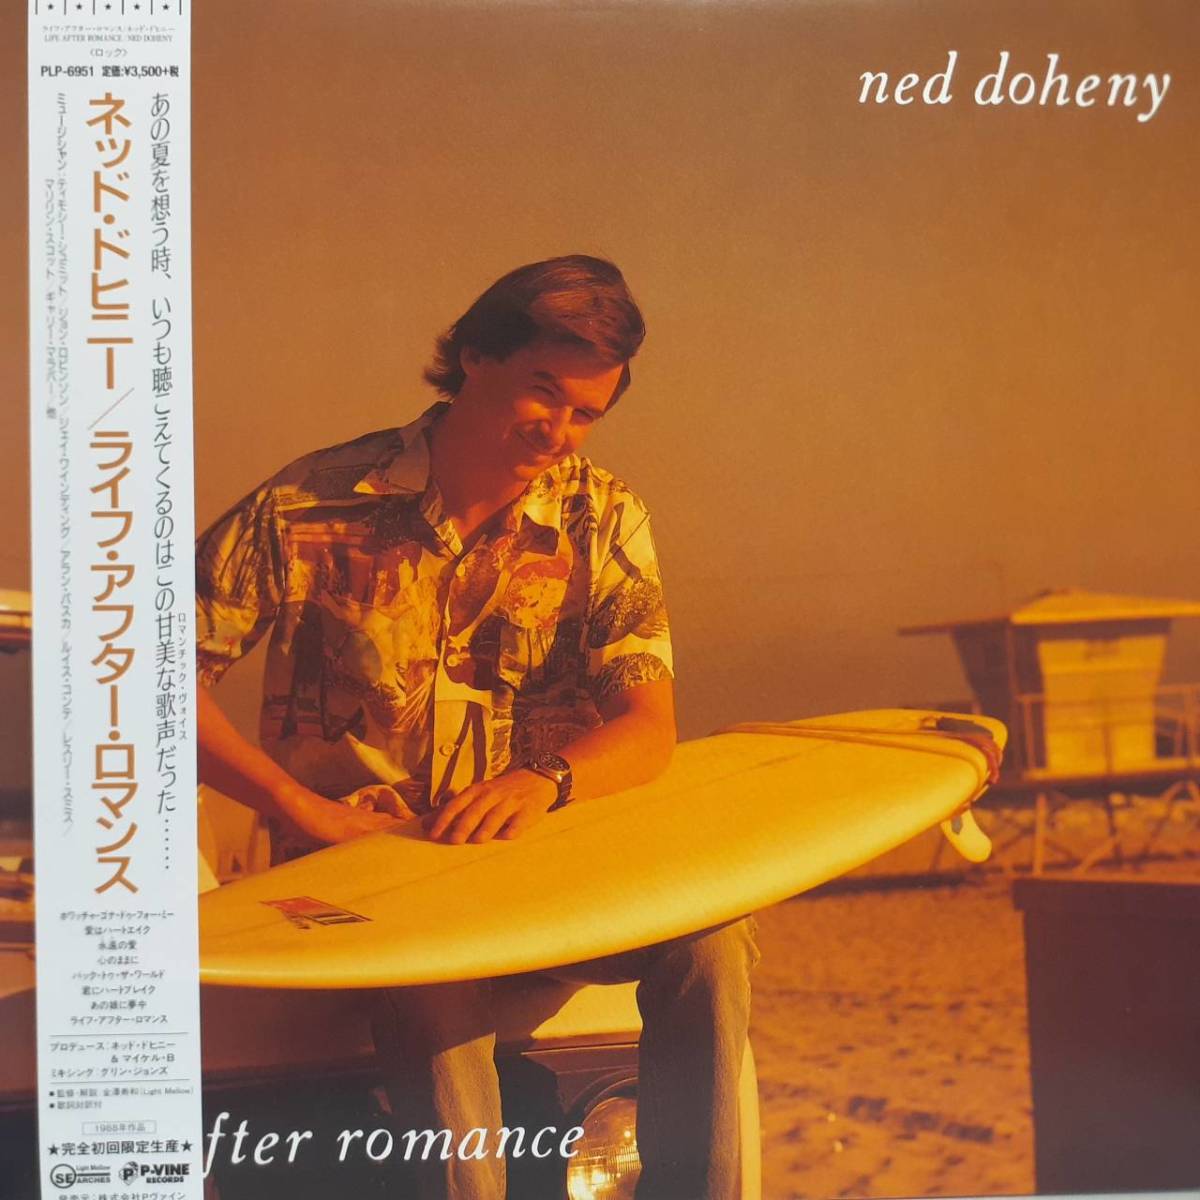 レア限定盤 日本盤LP帯付き Ned Doheny / Life After Romance 2019年 P-VINE RLP-6951 ネッド・ドヒニー ライフ・アフター・ロマンス AOR_画像1